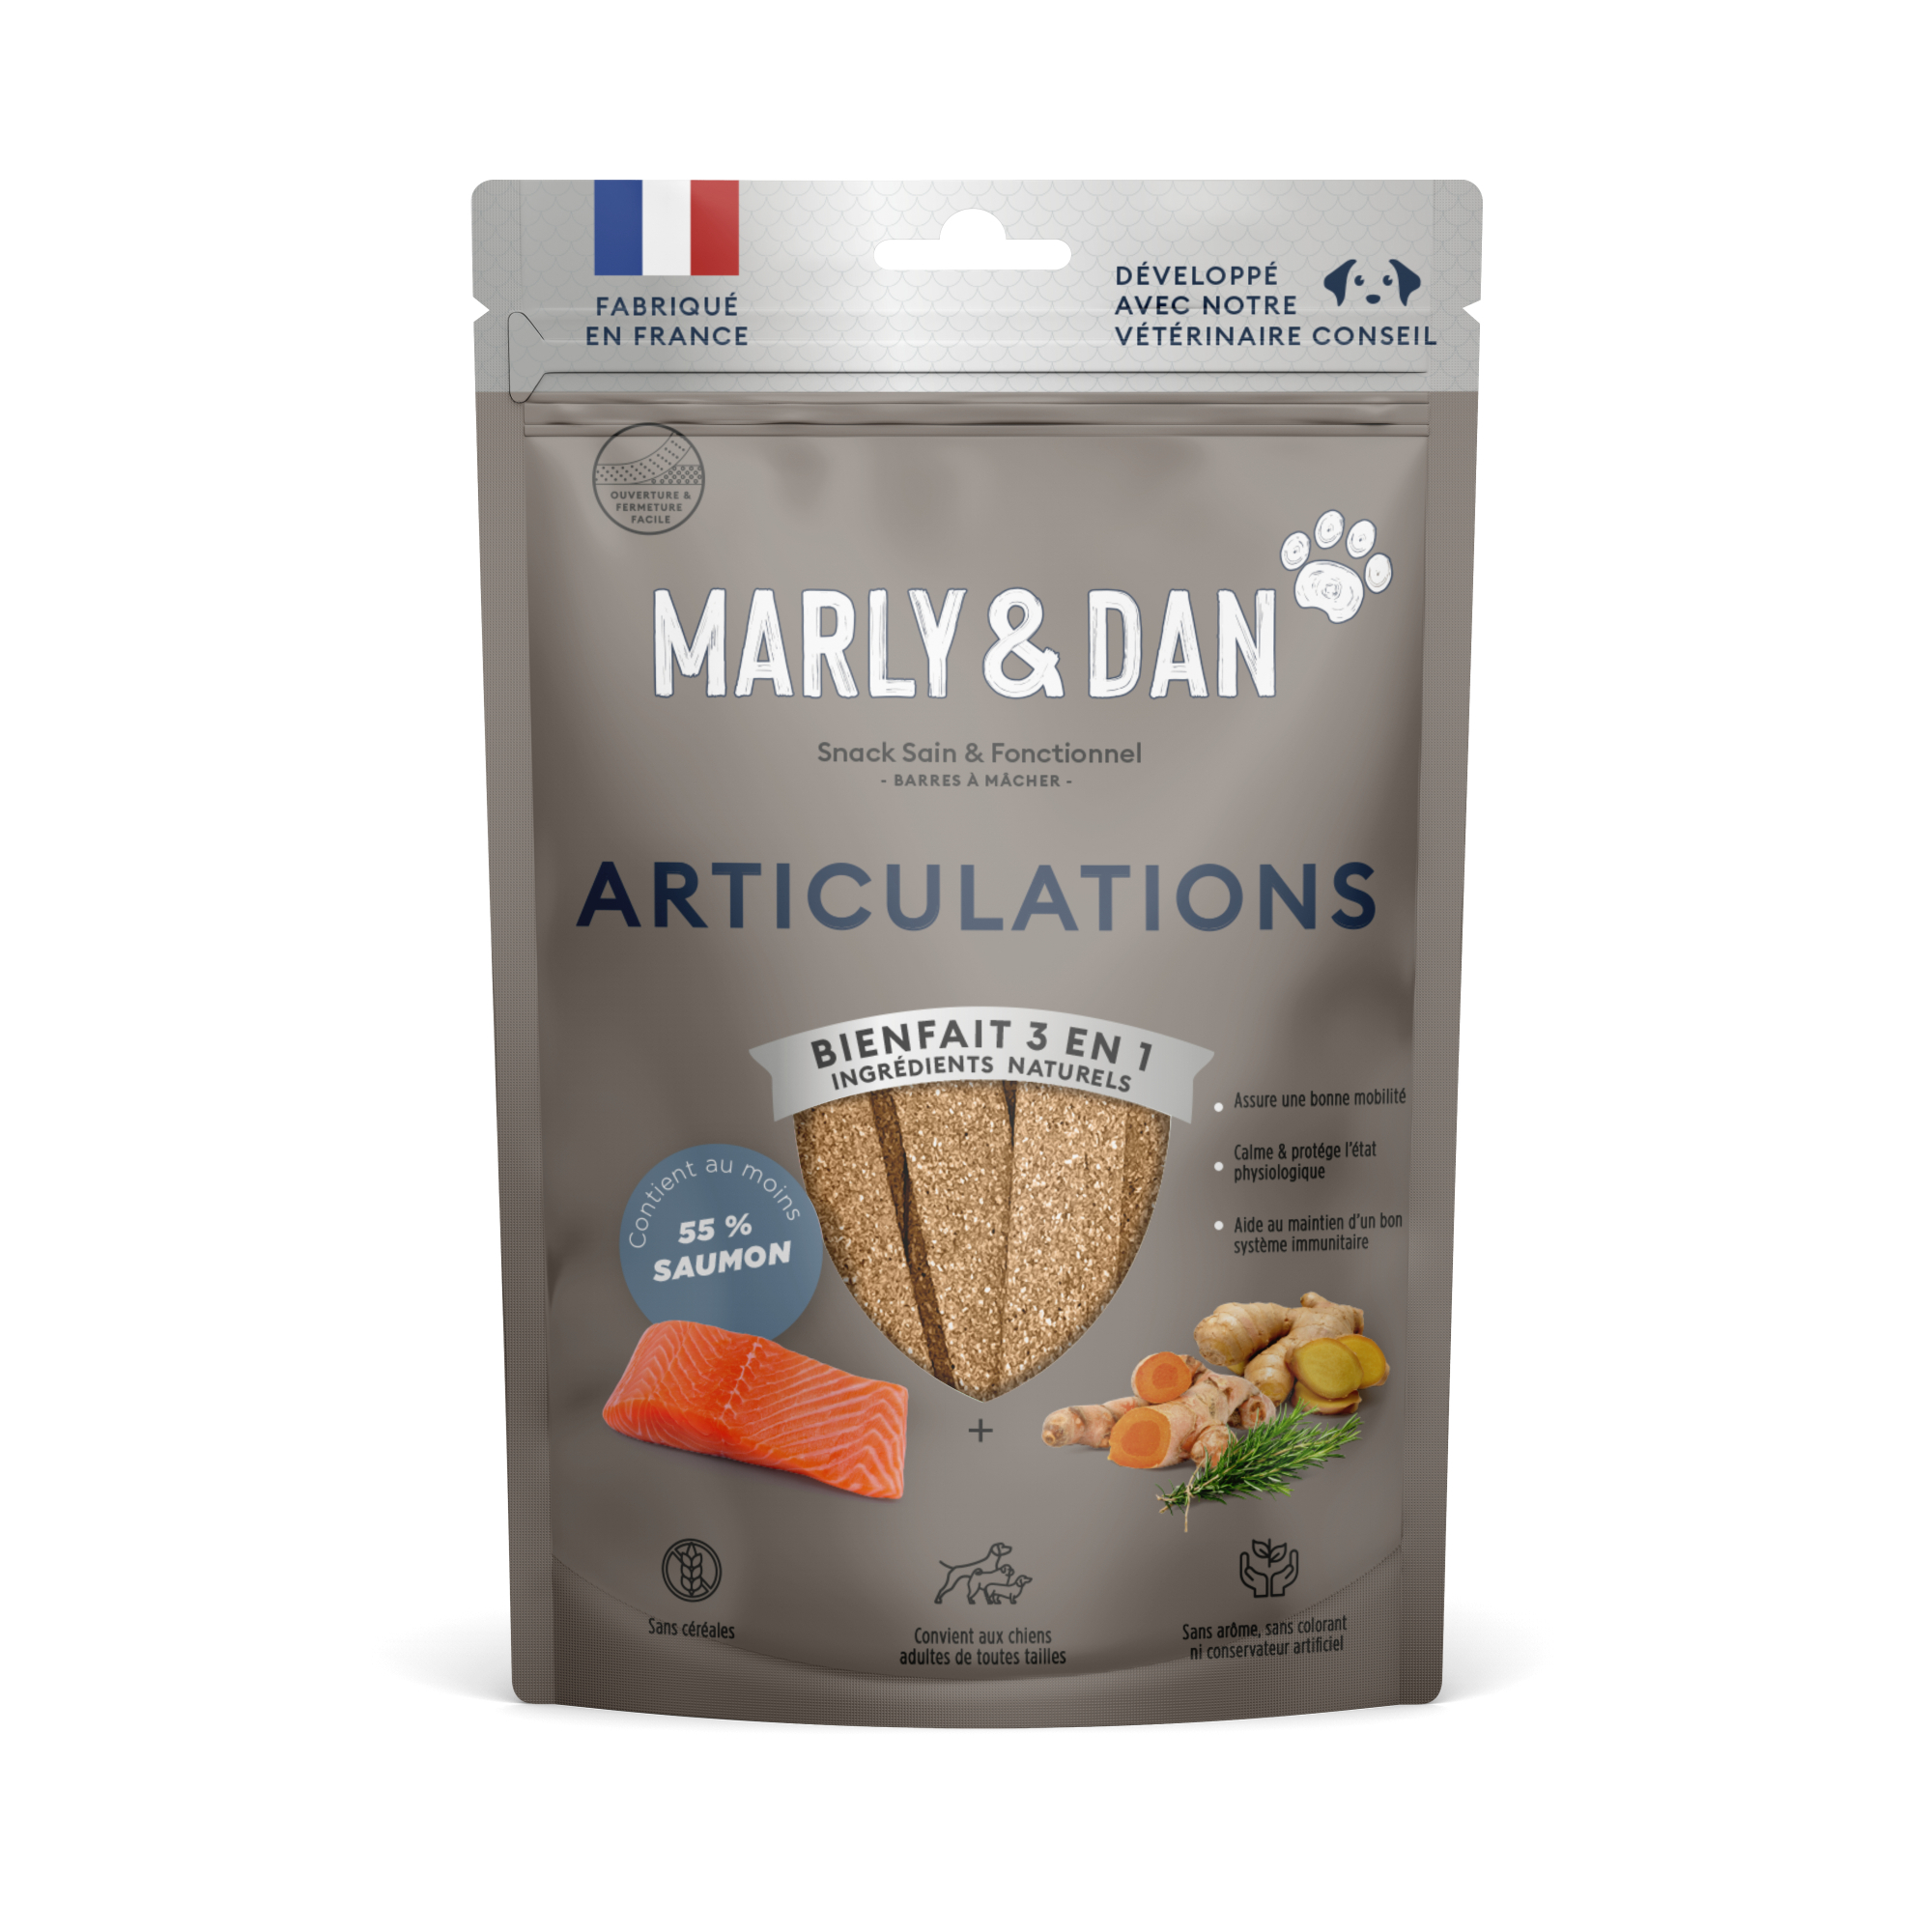 Marly & Dan Articulations Barritas de salmón Snacks para perros